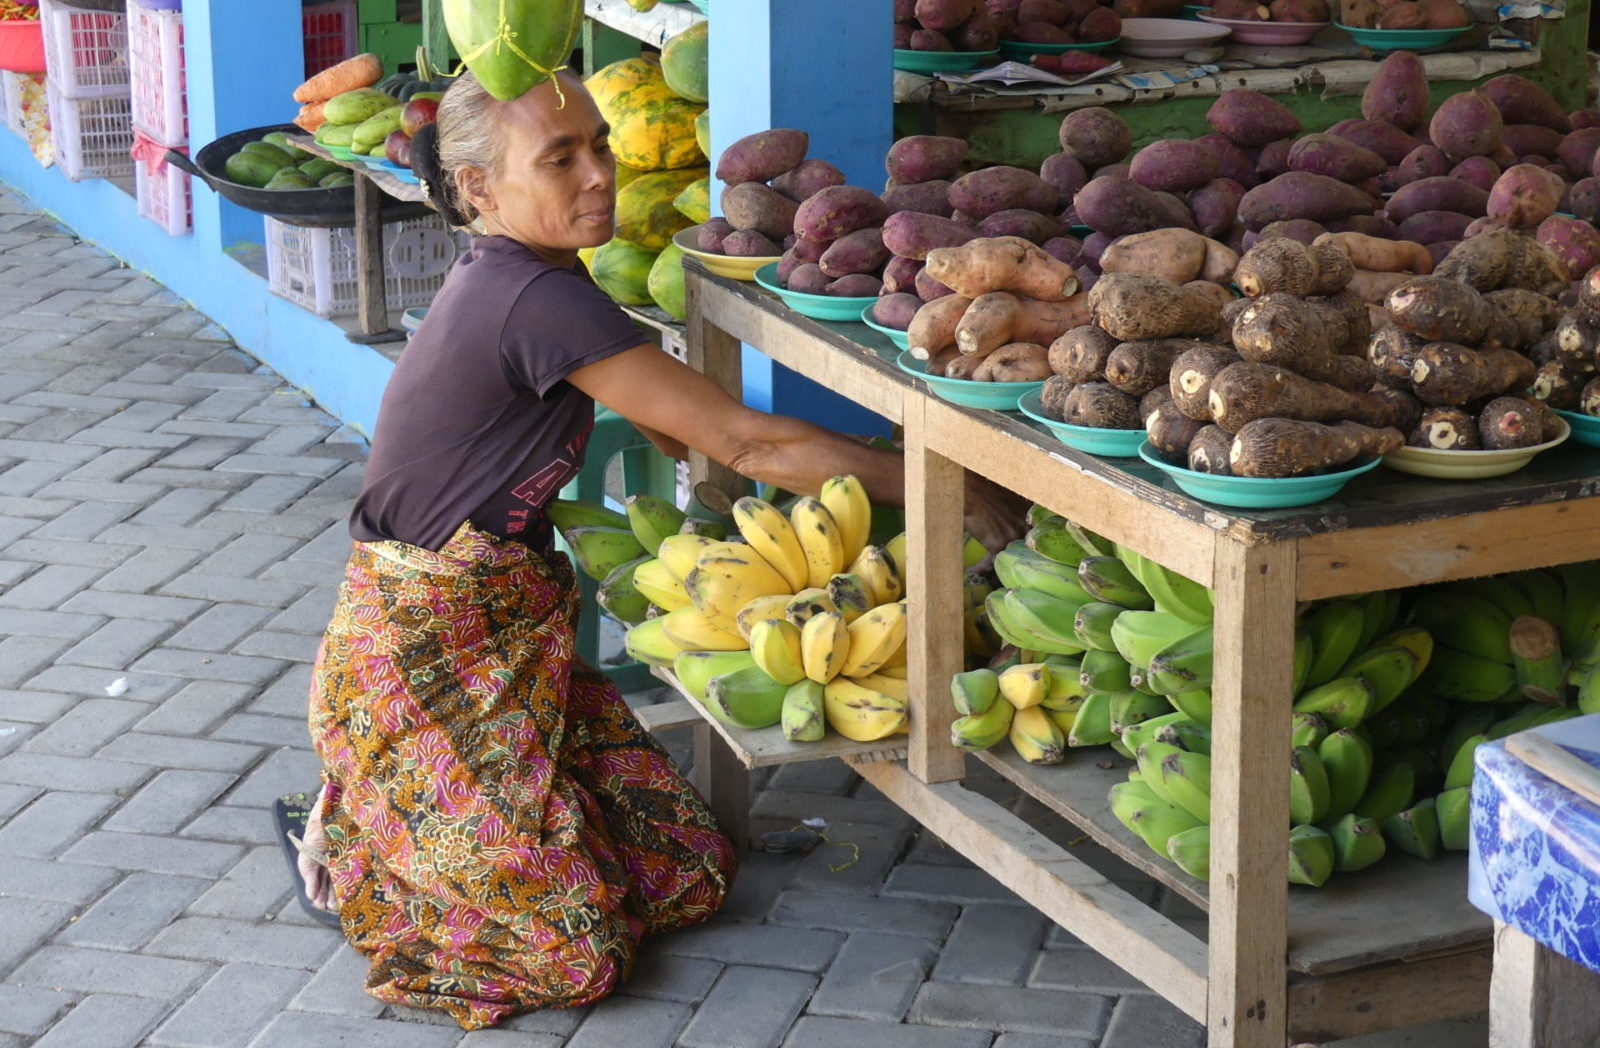 Timor-Leste traditionelle Lebensmittel